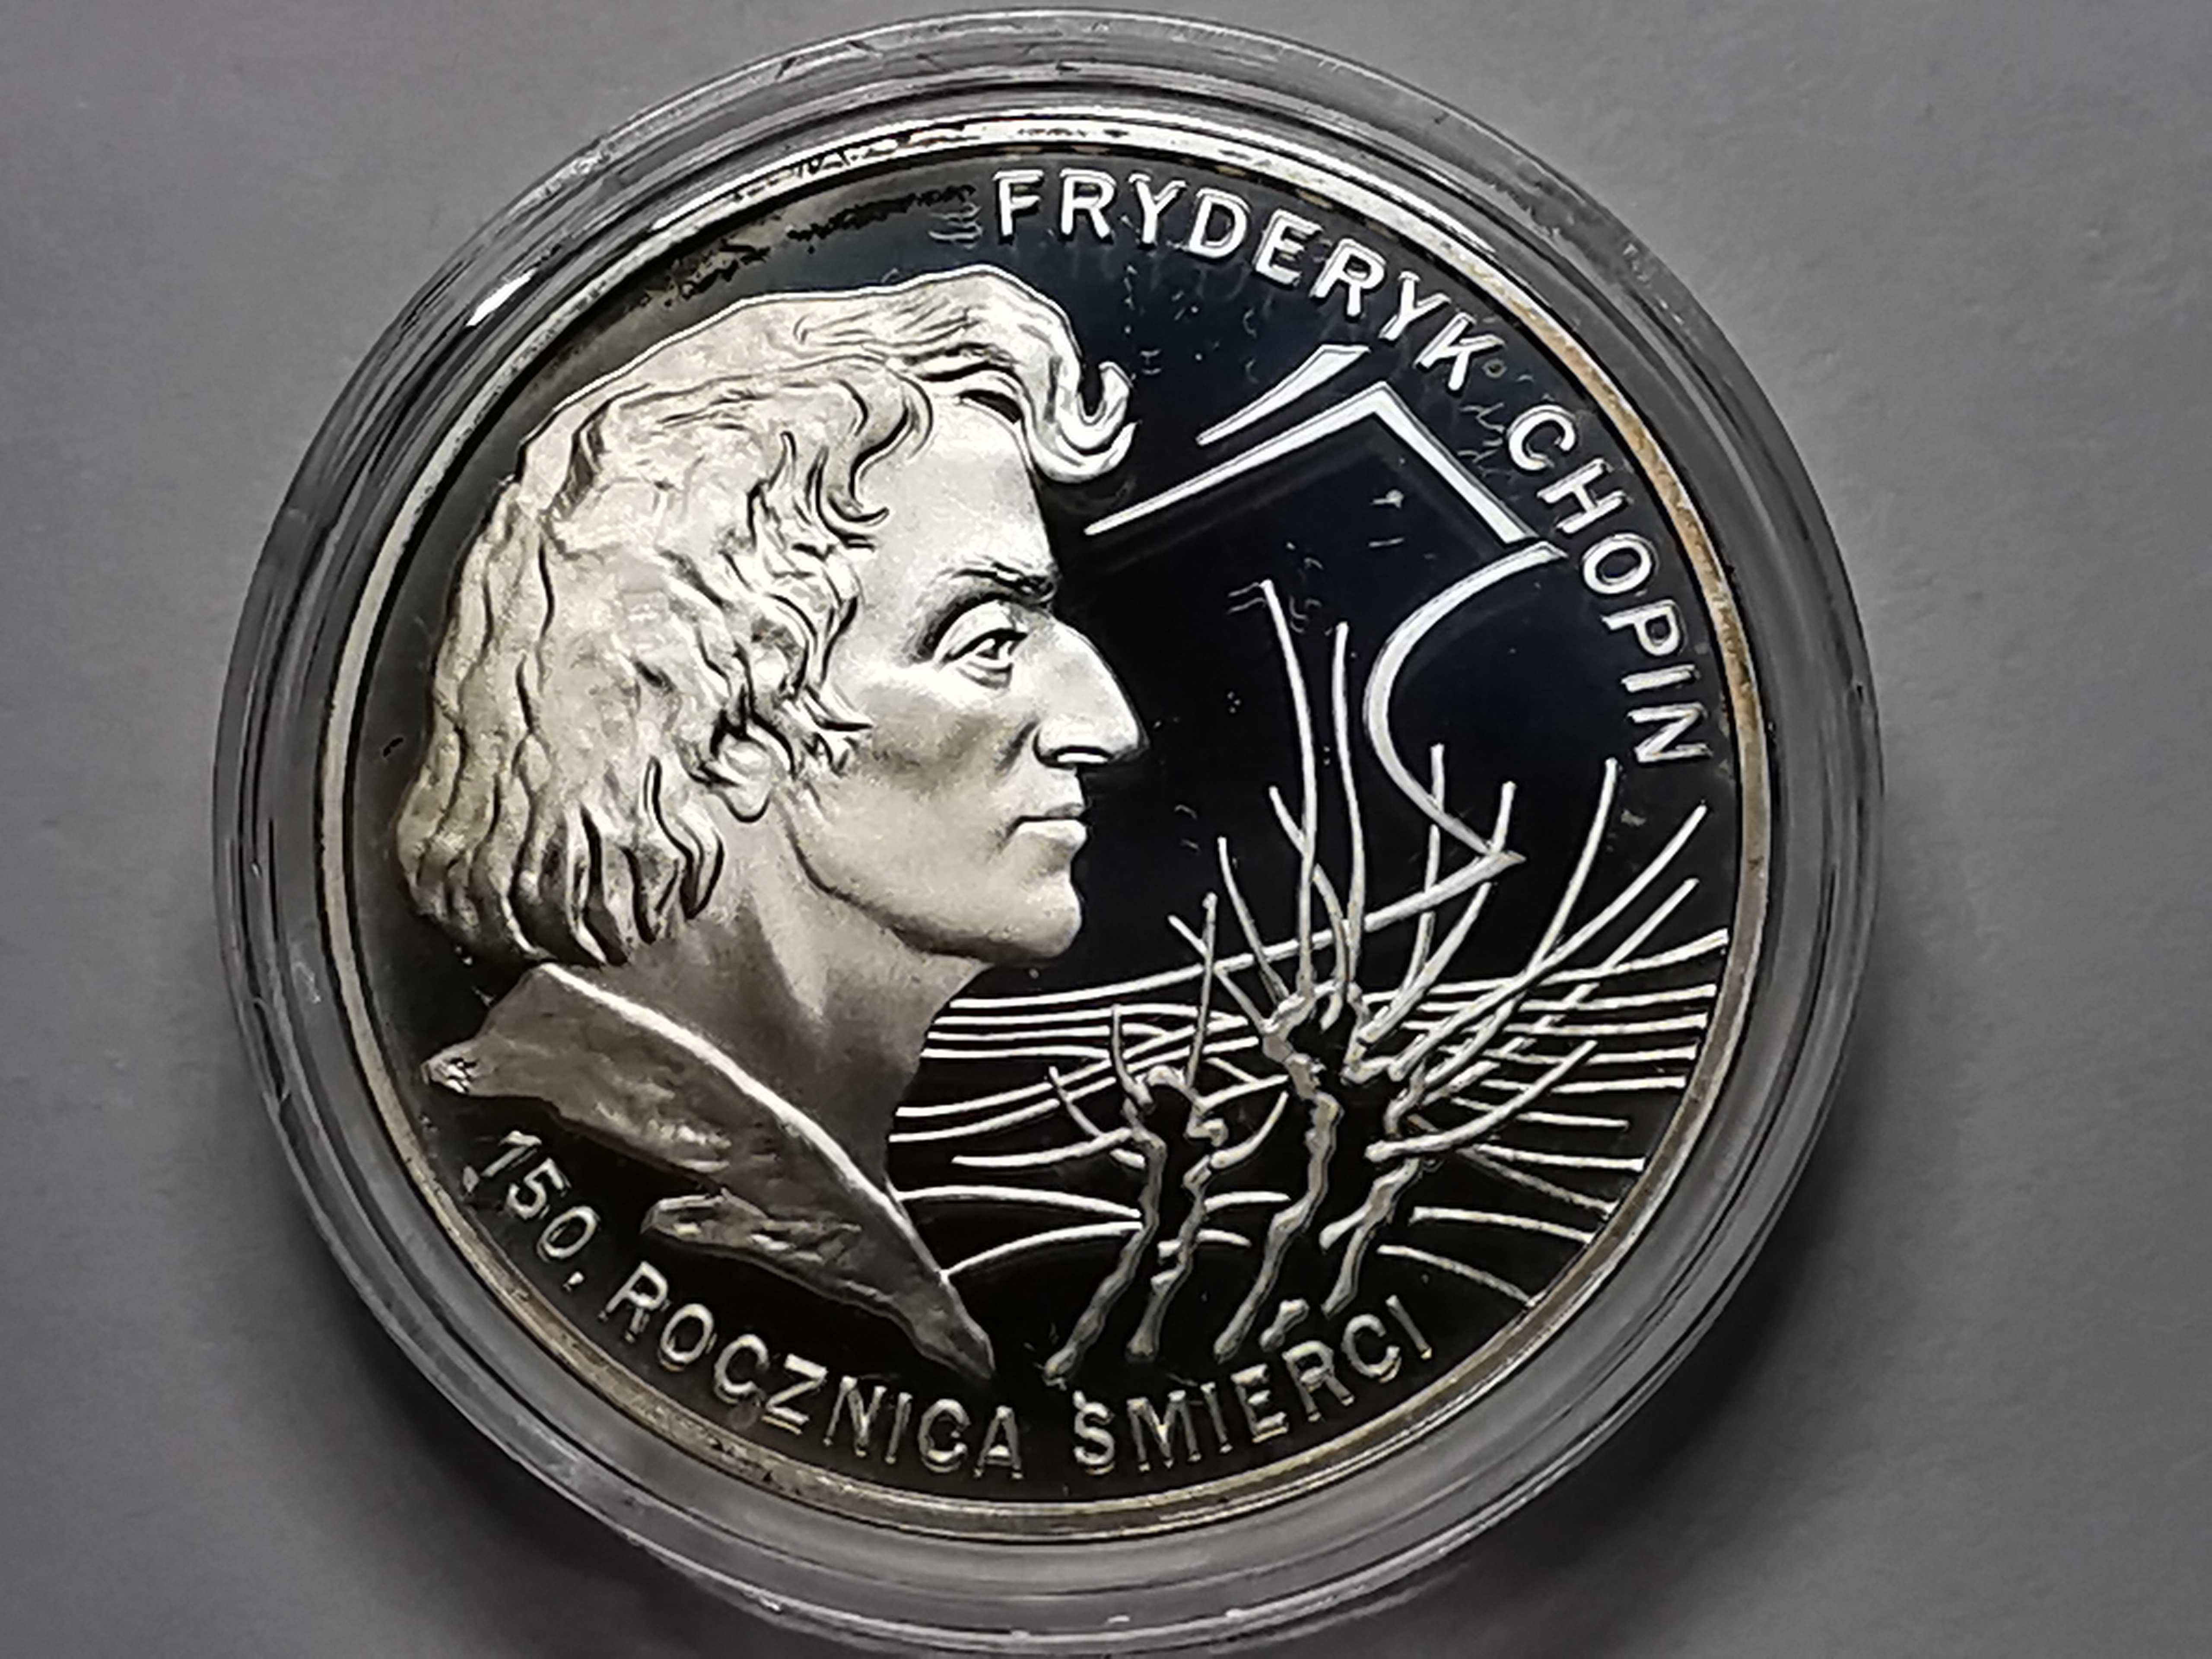 Moneta 150 Rocznica Śmierci Fryderyka Chopina - Lustrzanka 10zł